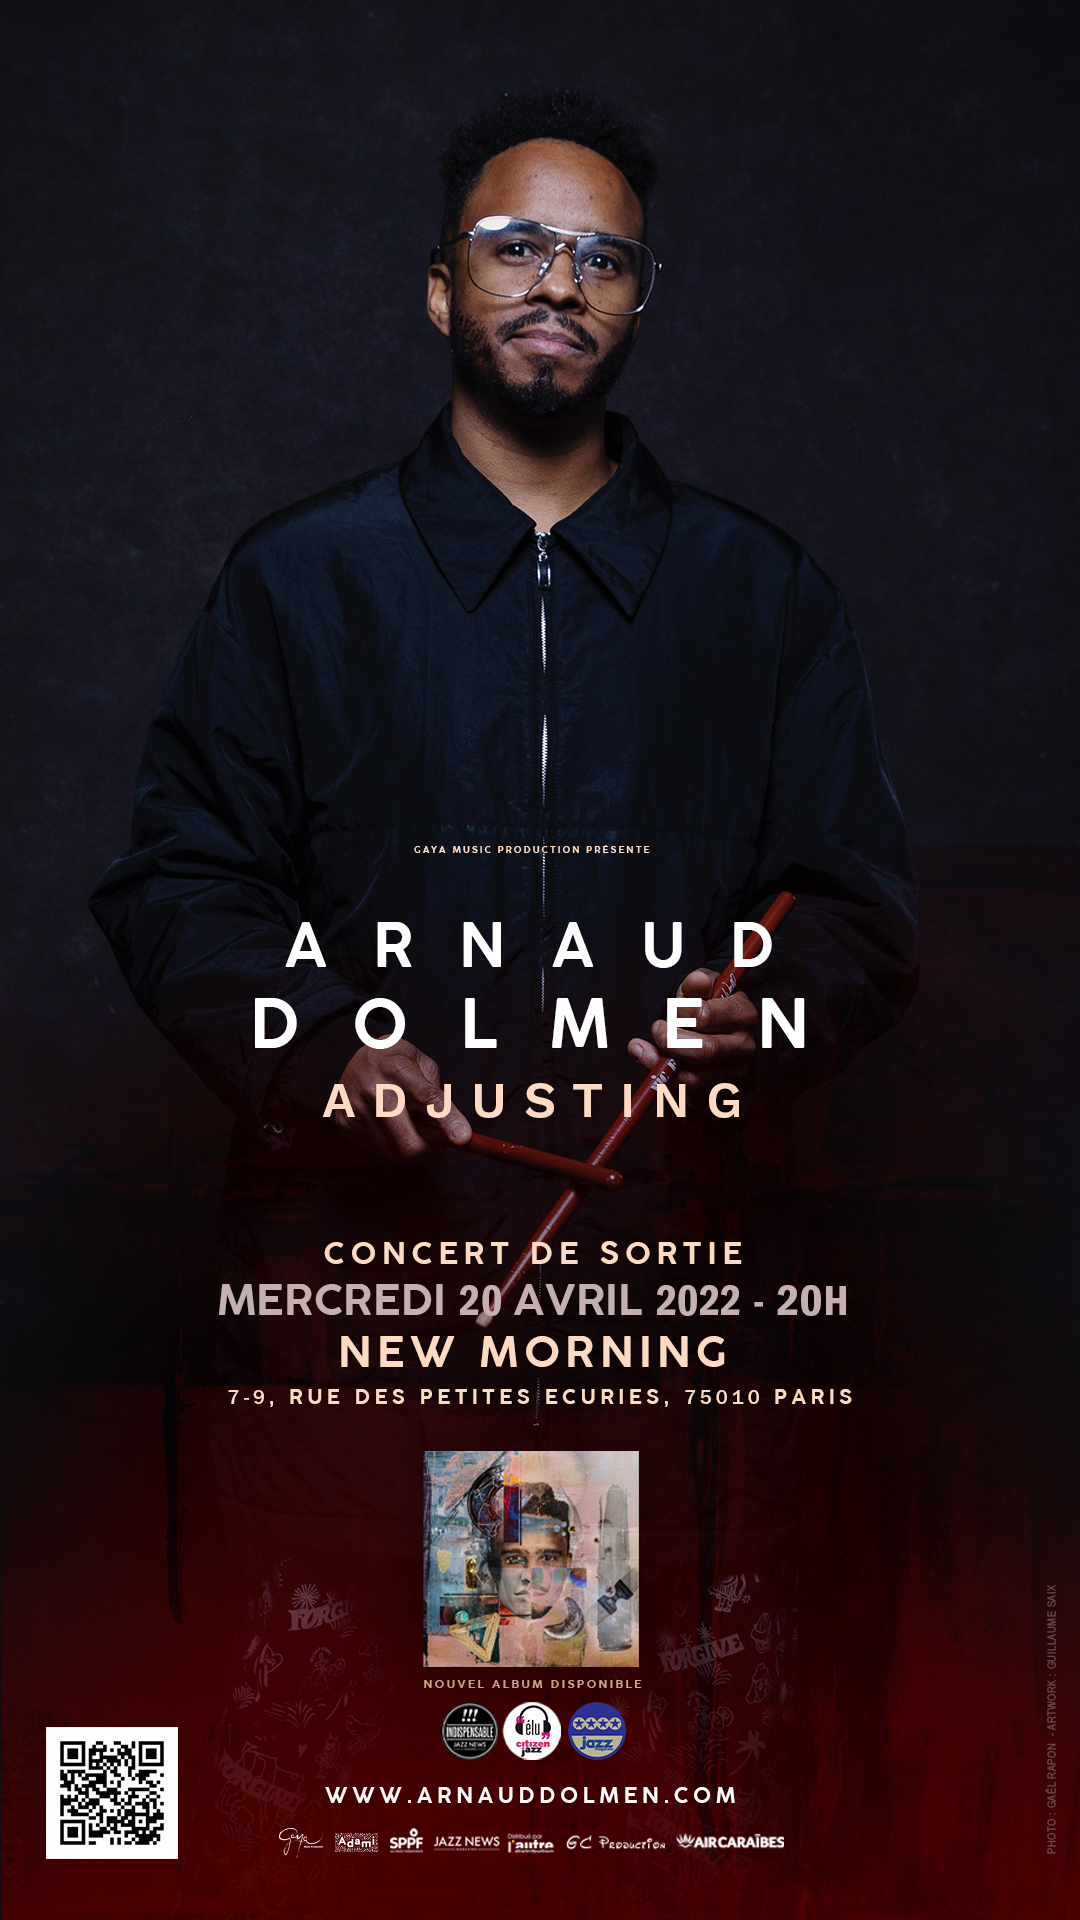 Le batteur Guadeloupéen Arnaud Dolmen en concert demain au New Morning (Paris)